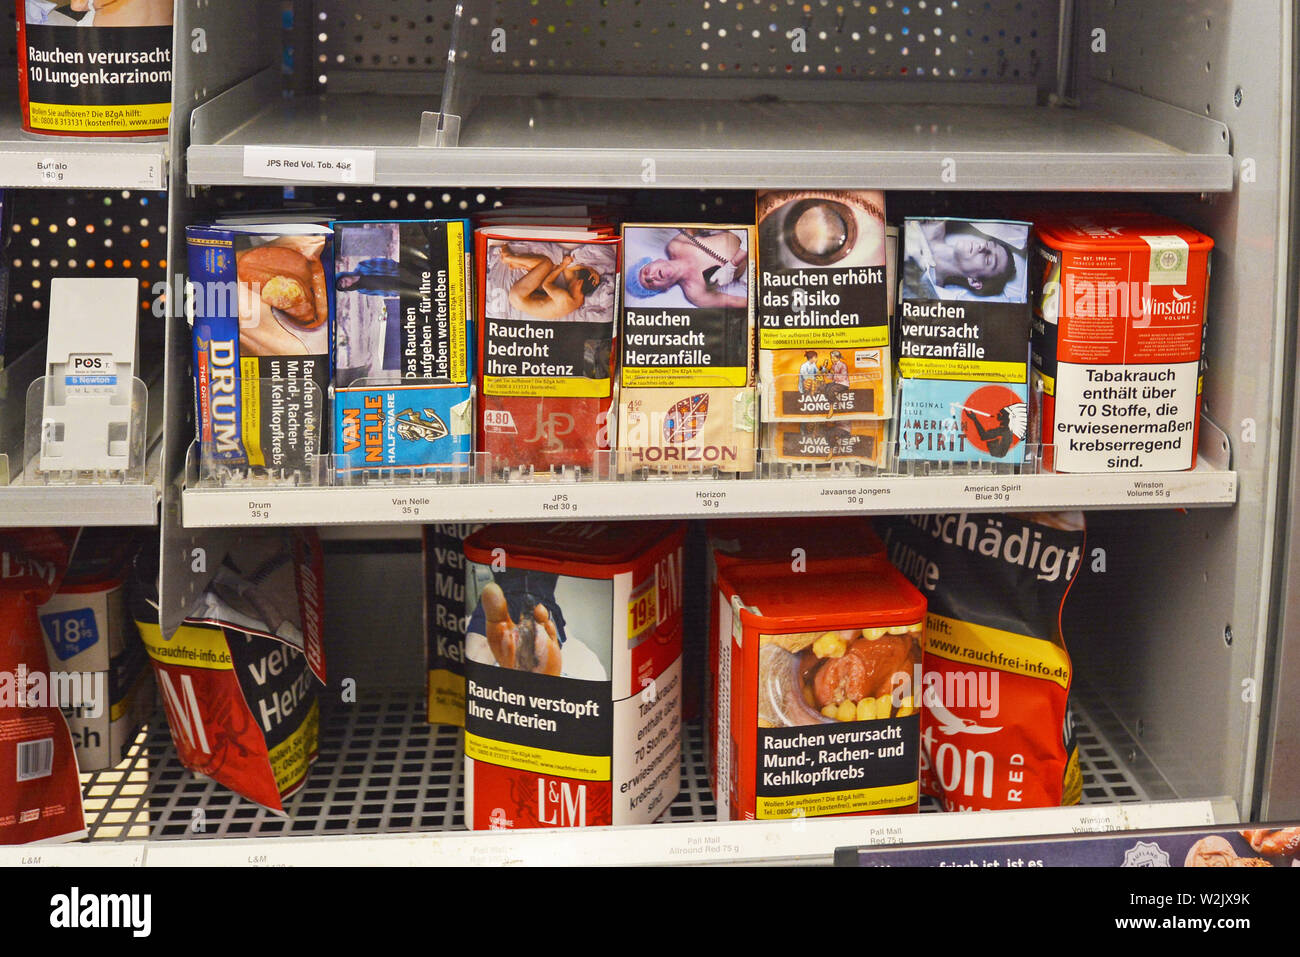 Estantería con los paquetes de tabaco para enrollar cigarrillos con etiquetas de advertencia sobre ellos en supermercado alemán Foto de stock